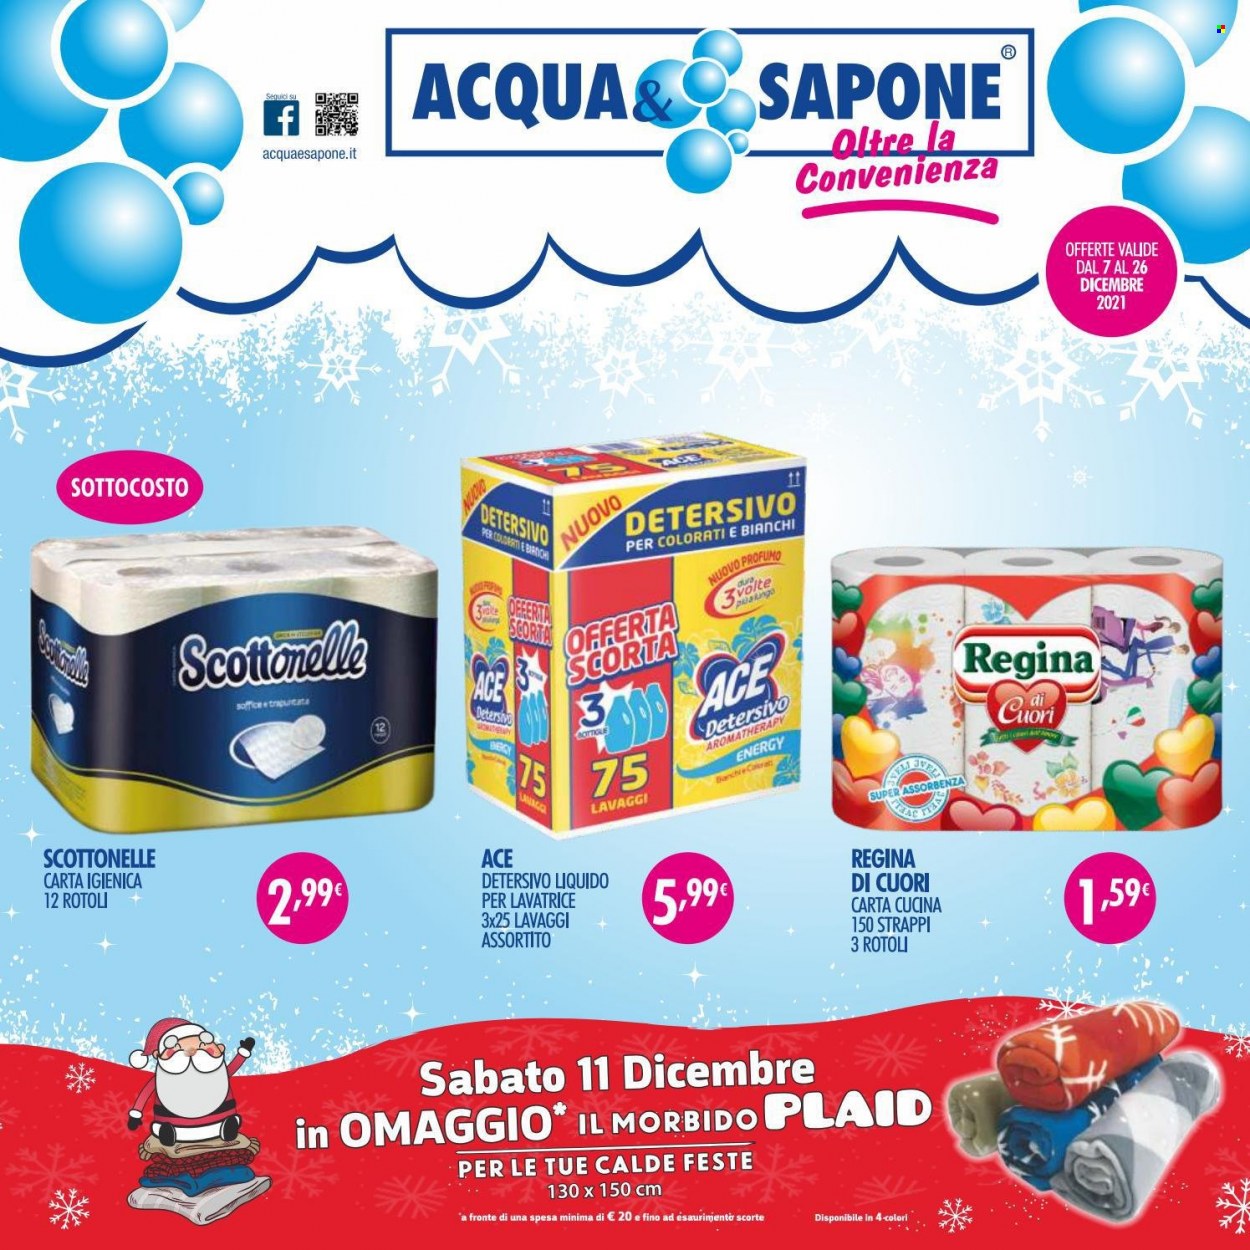 thumbnail - Volantino Acqua & Sapone - 7/12/2021 - 26/12/2021 - Prodotti in offerta - carta cucina, carta igienica, Regina, Ace, sapone, profumo. Pagina 1.